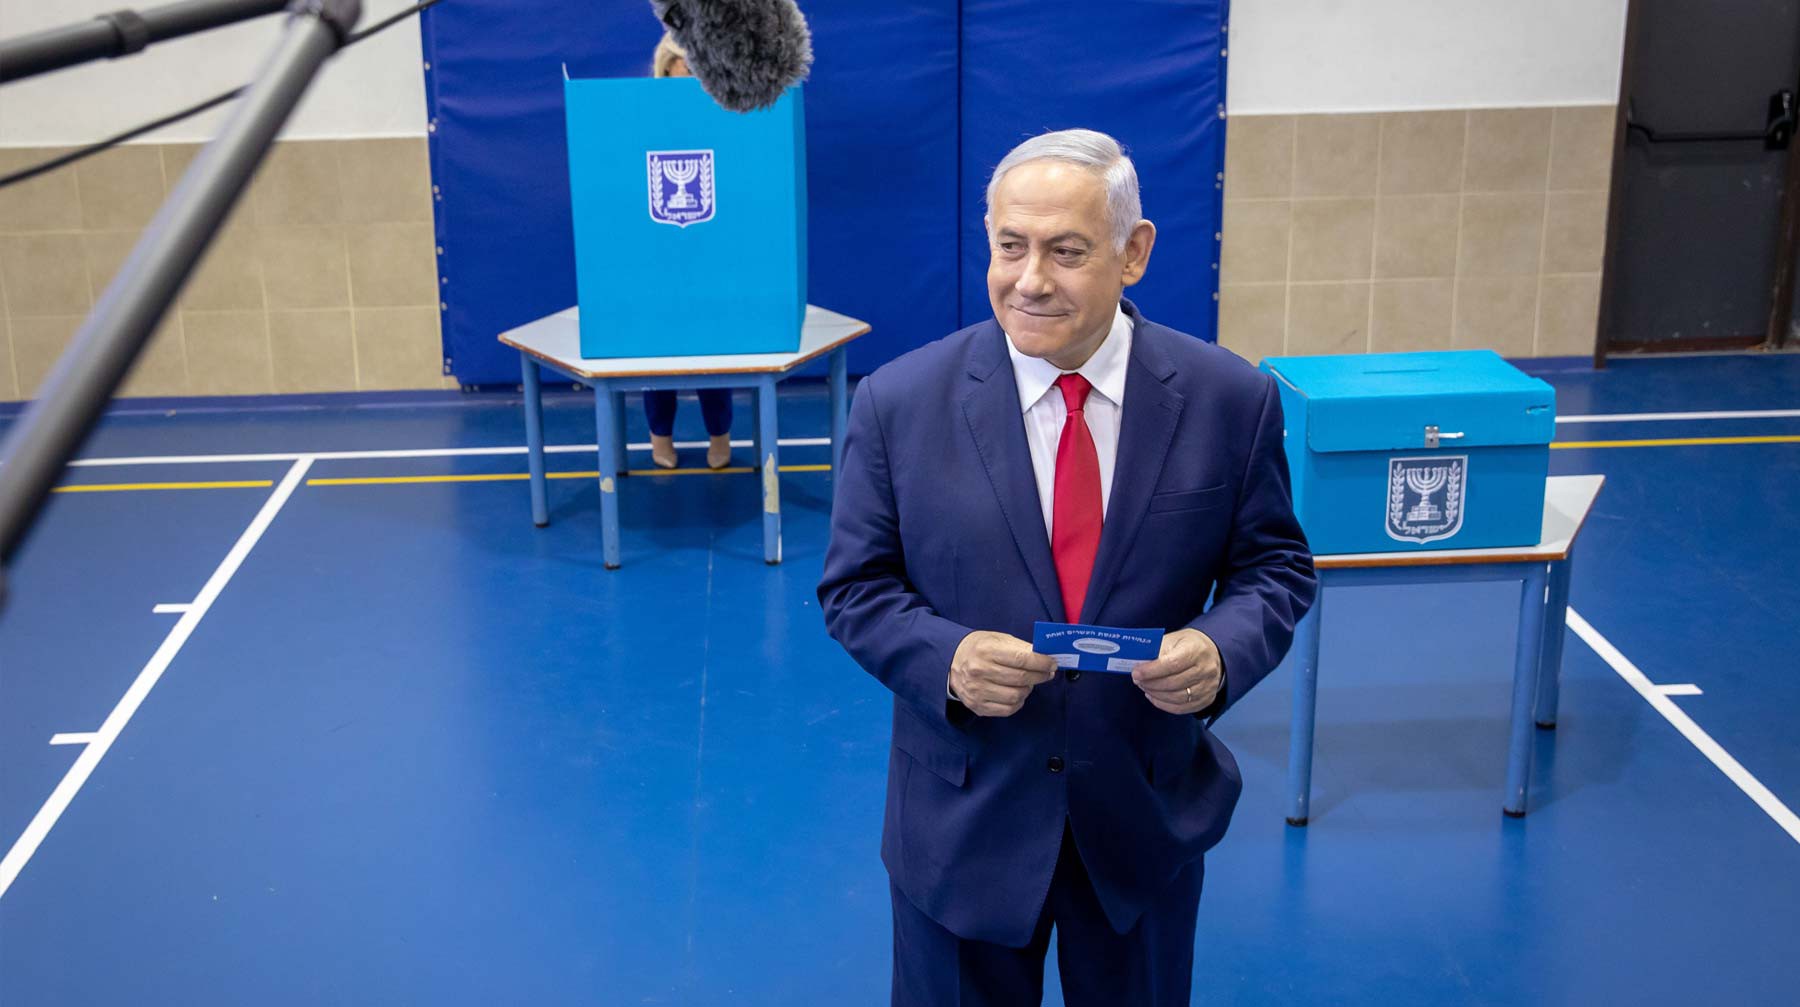 Dailystorm - Нетаньяху заявил о начале переговоров по созданию коалиции с правыми партиями